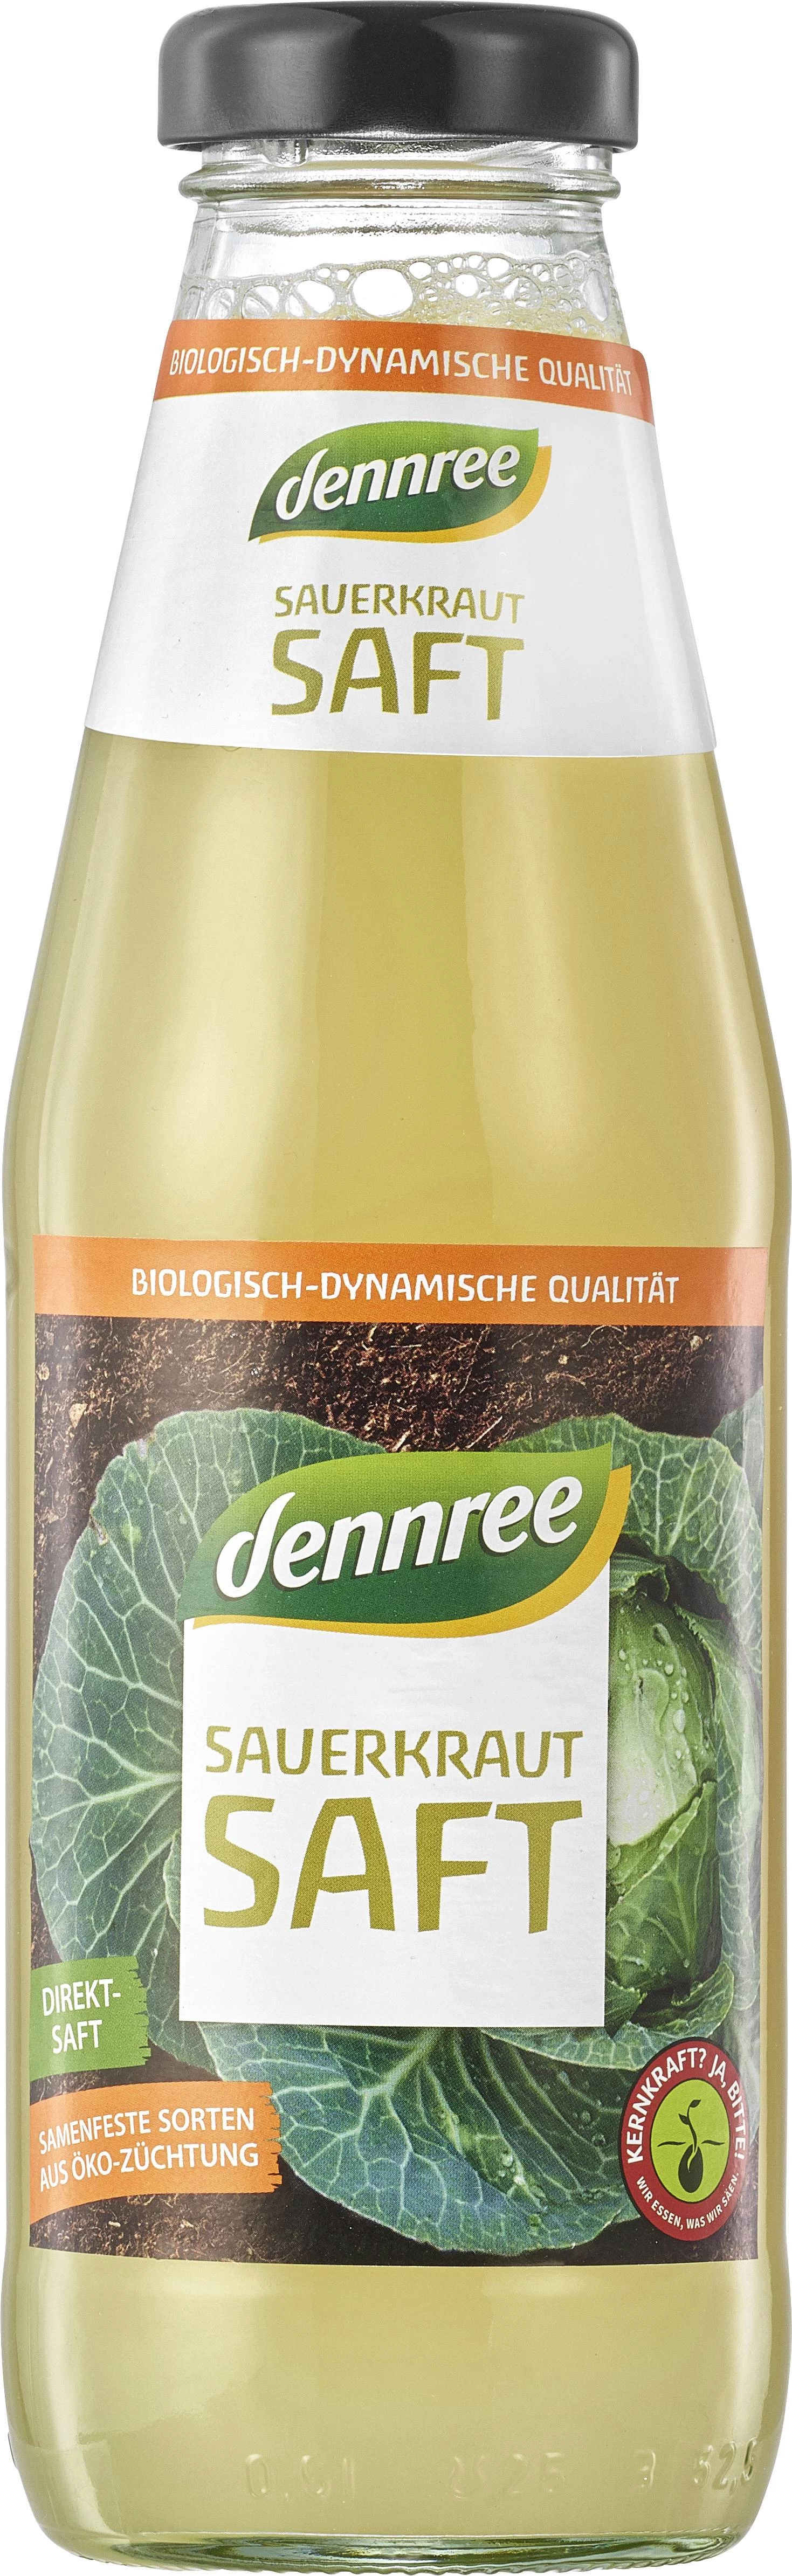 Suc de varza murata fermentata, eco-bio, 500ml - Dennree